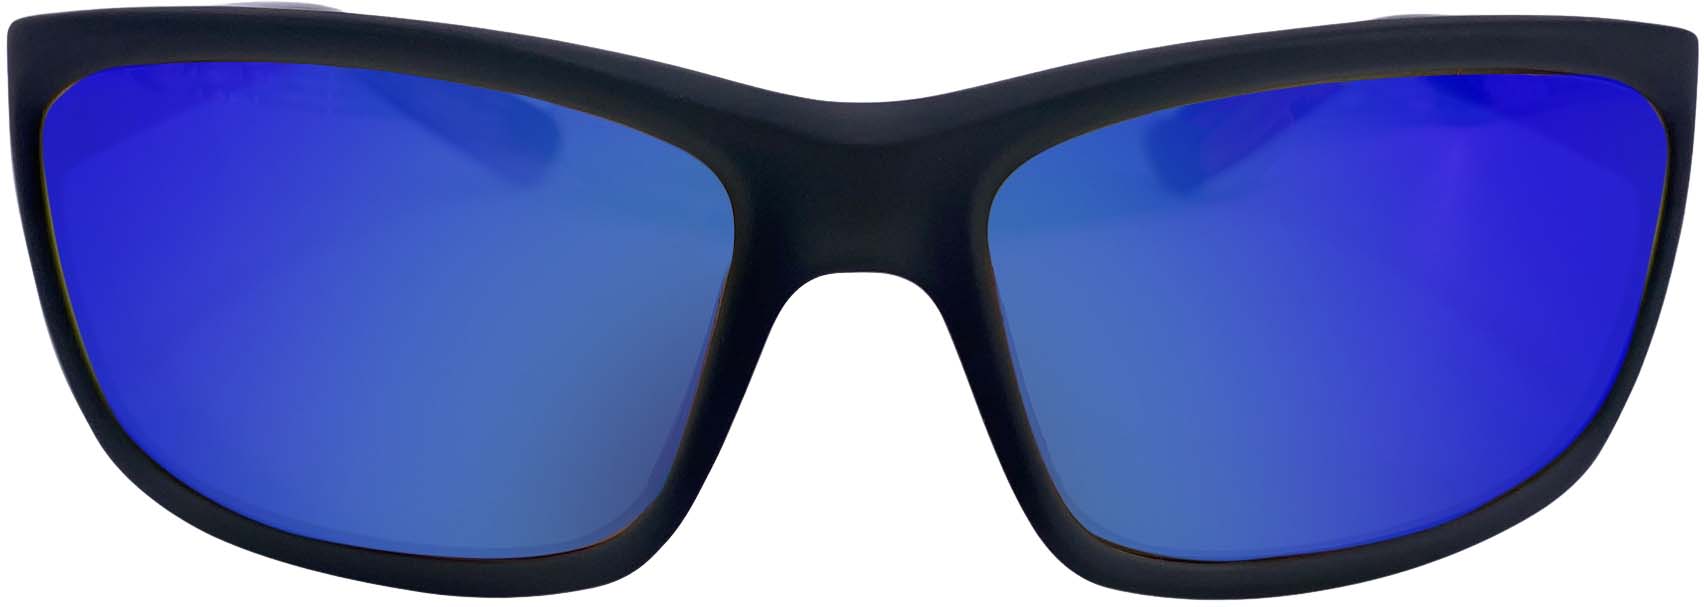 RLVNT Ranger Series Sunglasses